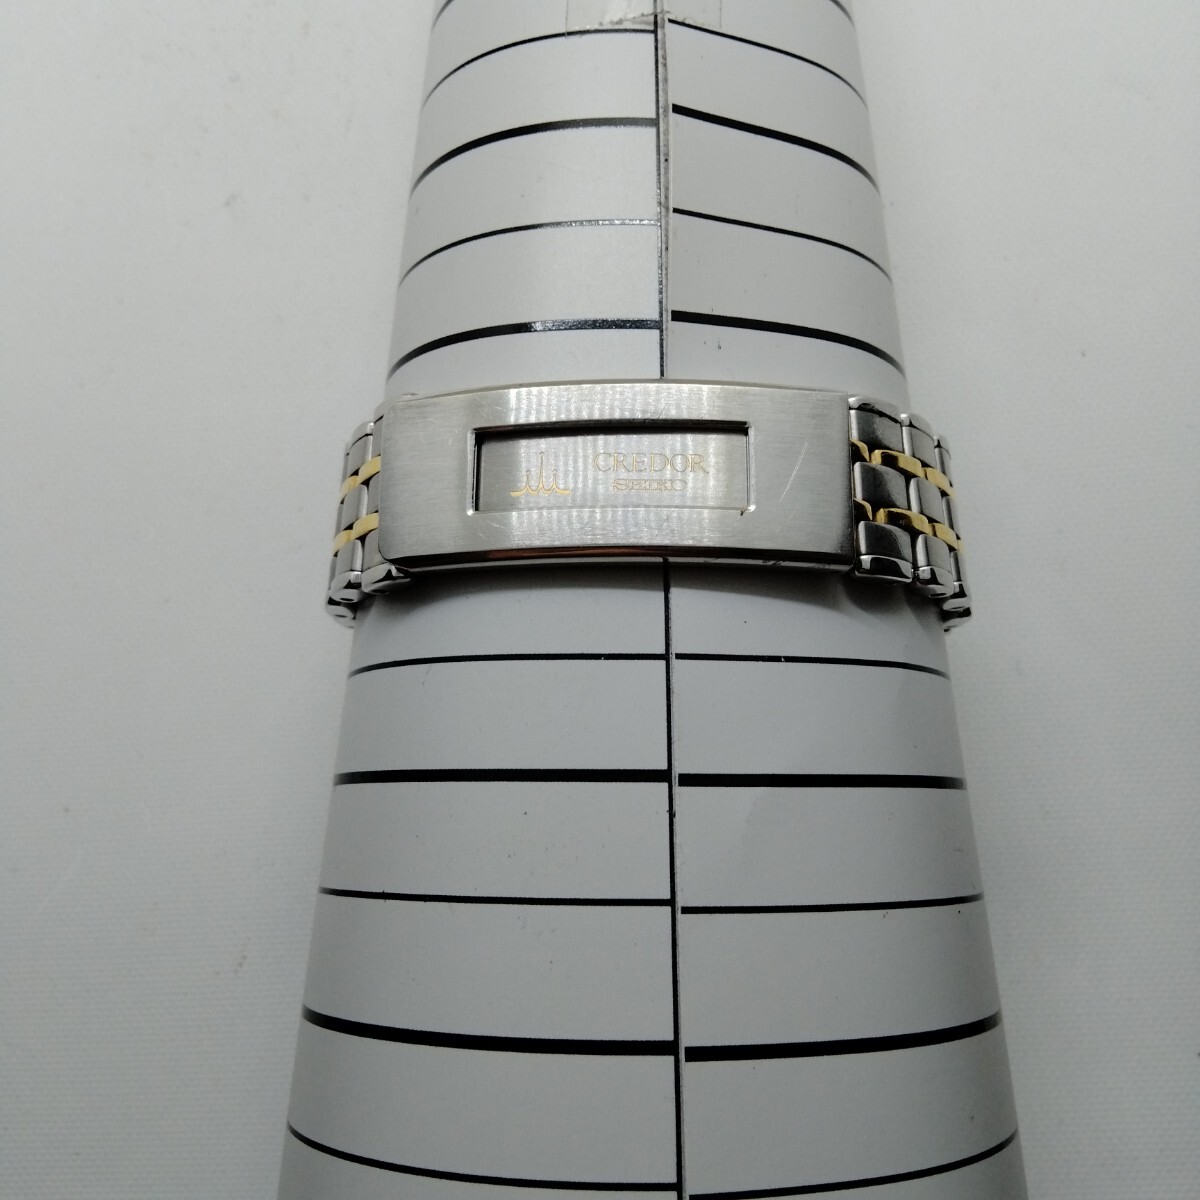 SEIKO CREDOR Seiko Credor мужские наручные часы частота 1 шт. (.) номер образца 9571-6020